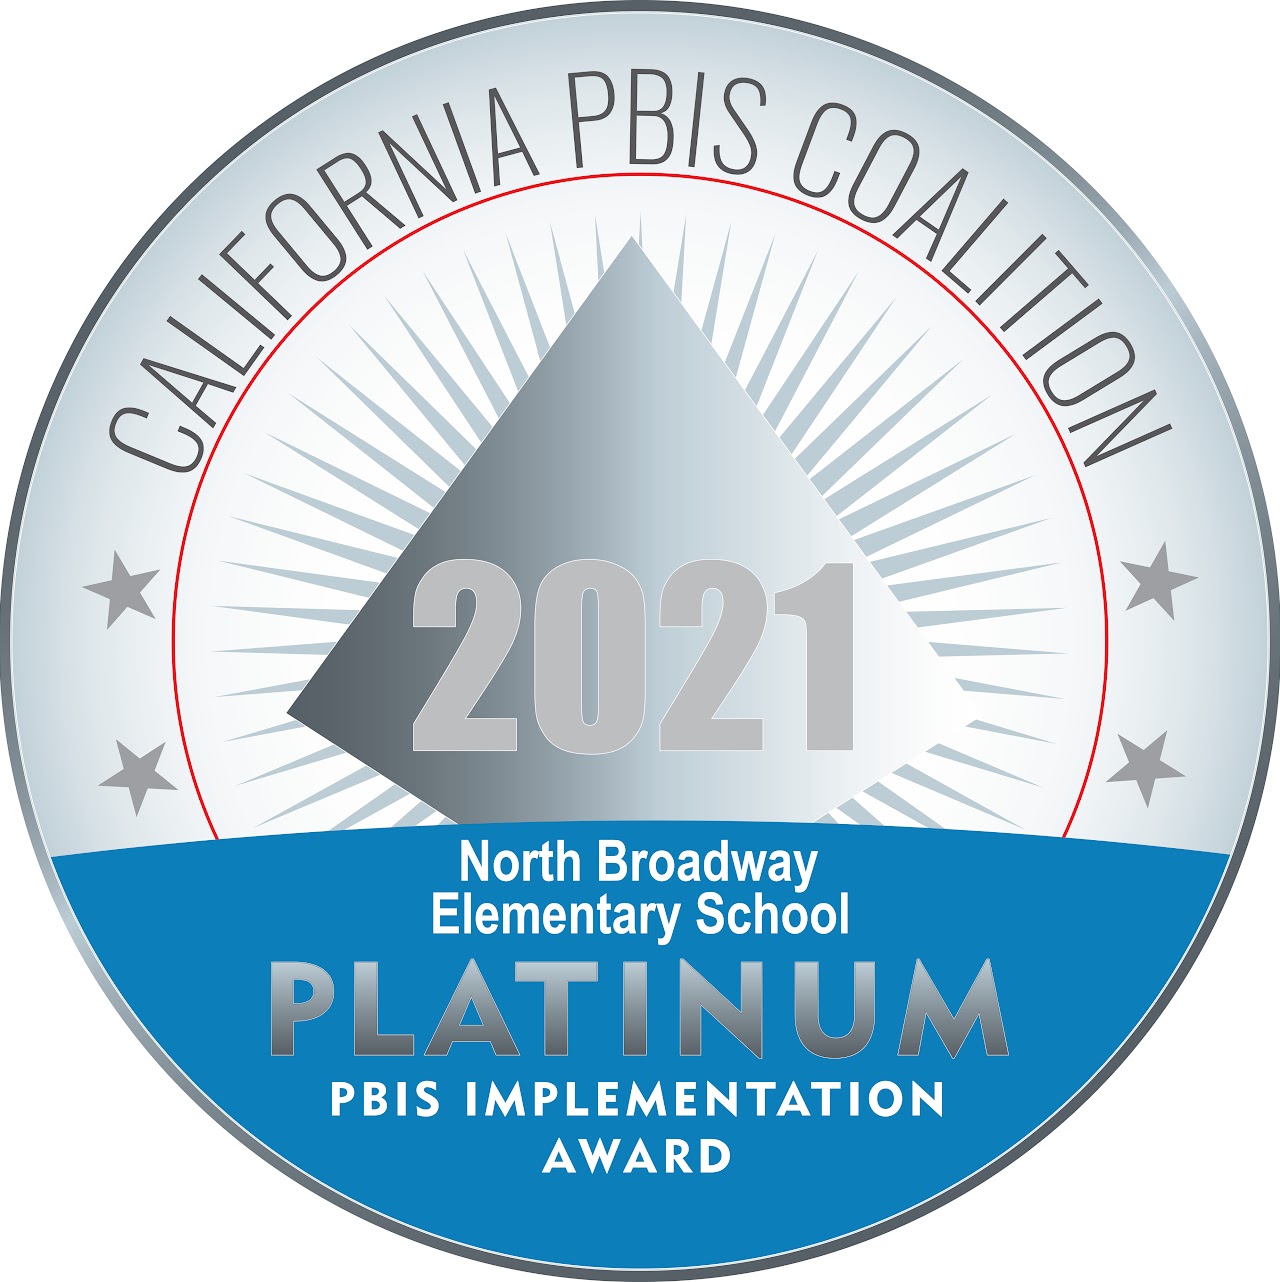 California PBIS Coalition PLATINUM 2021